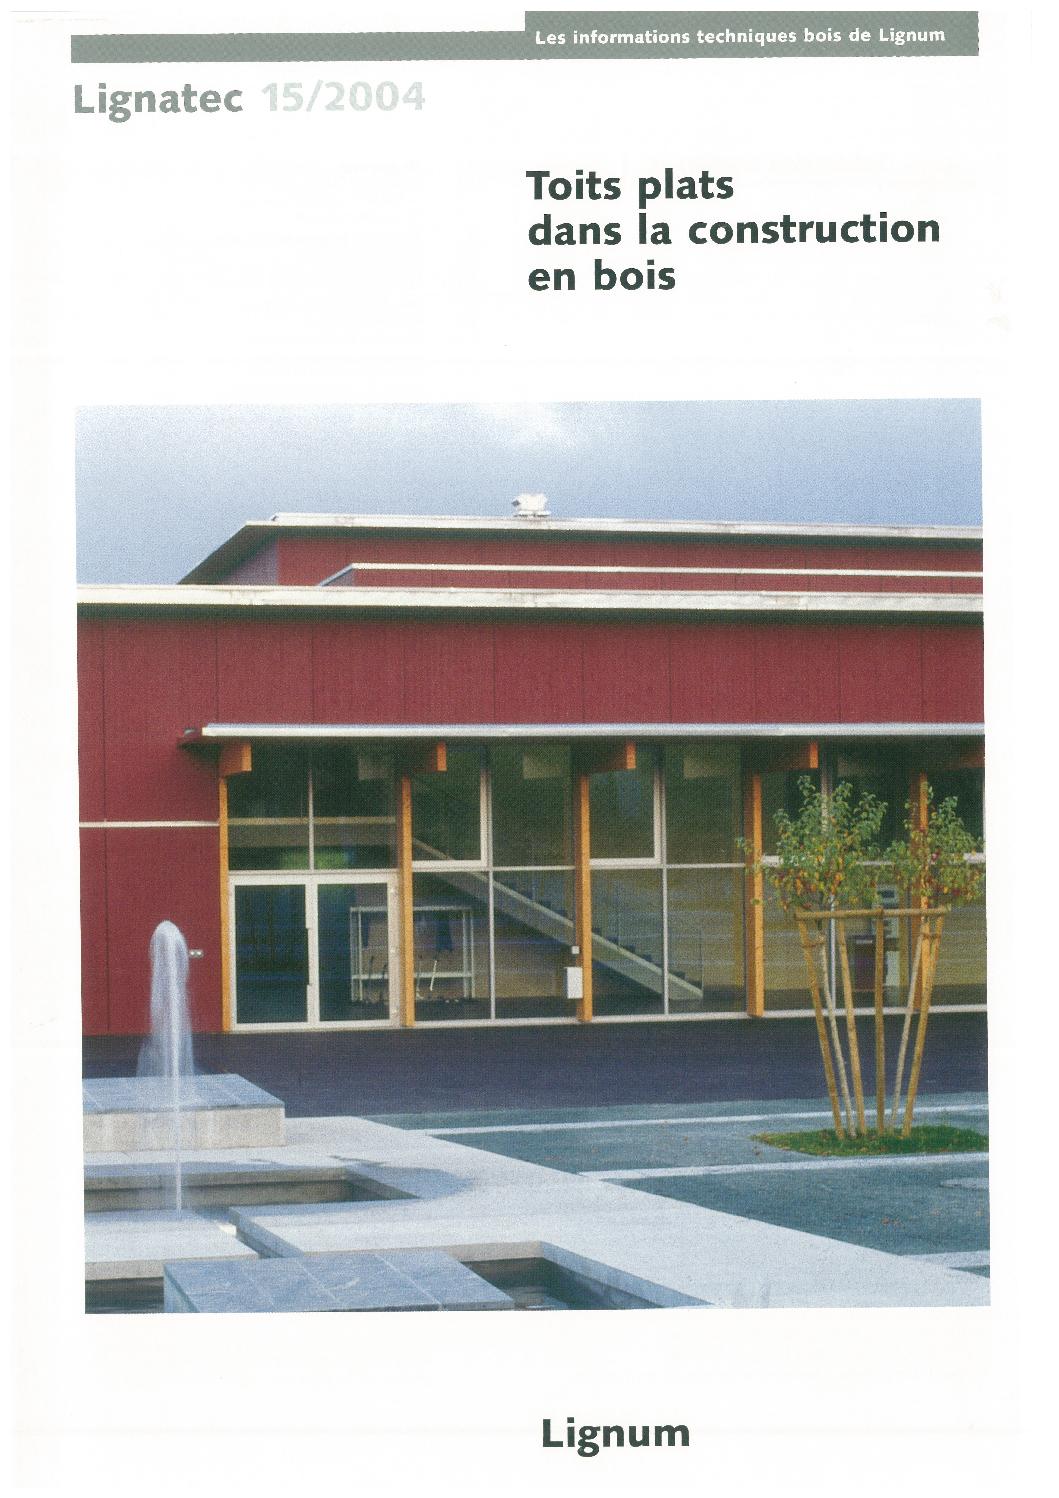 Table De Jardin Verre Inspirant toits Plats Dans La Construction En Bois by Lignum issuu